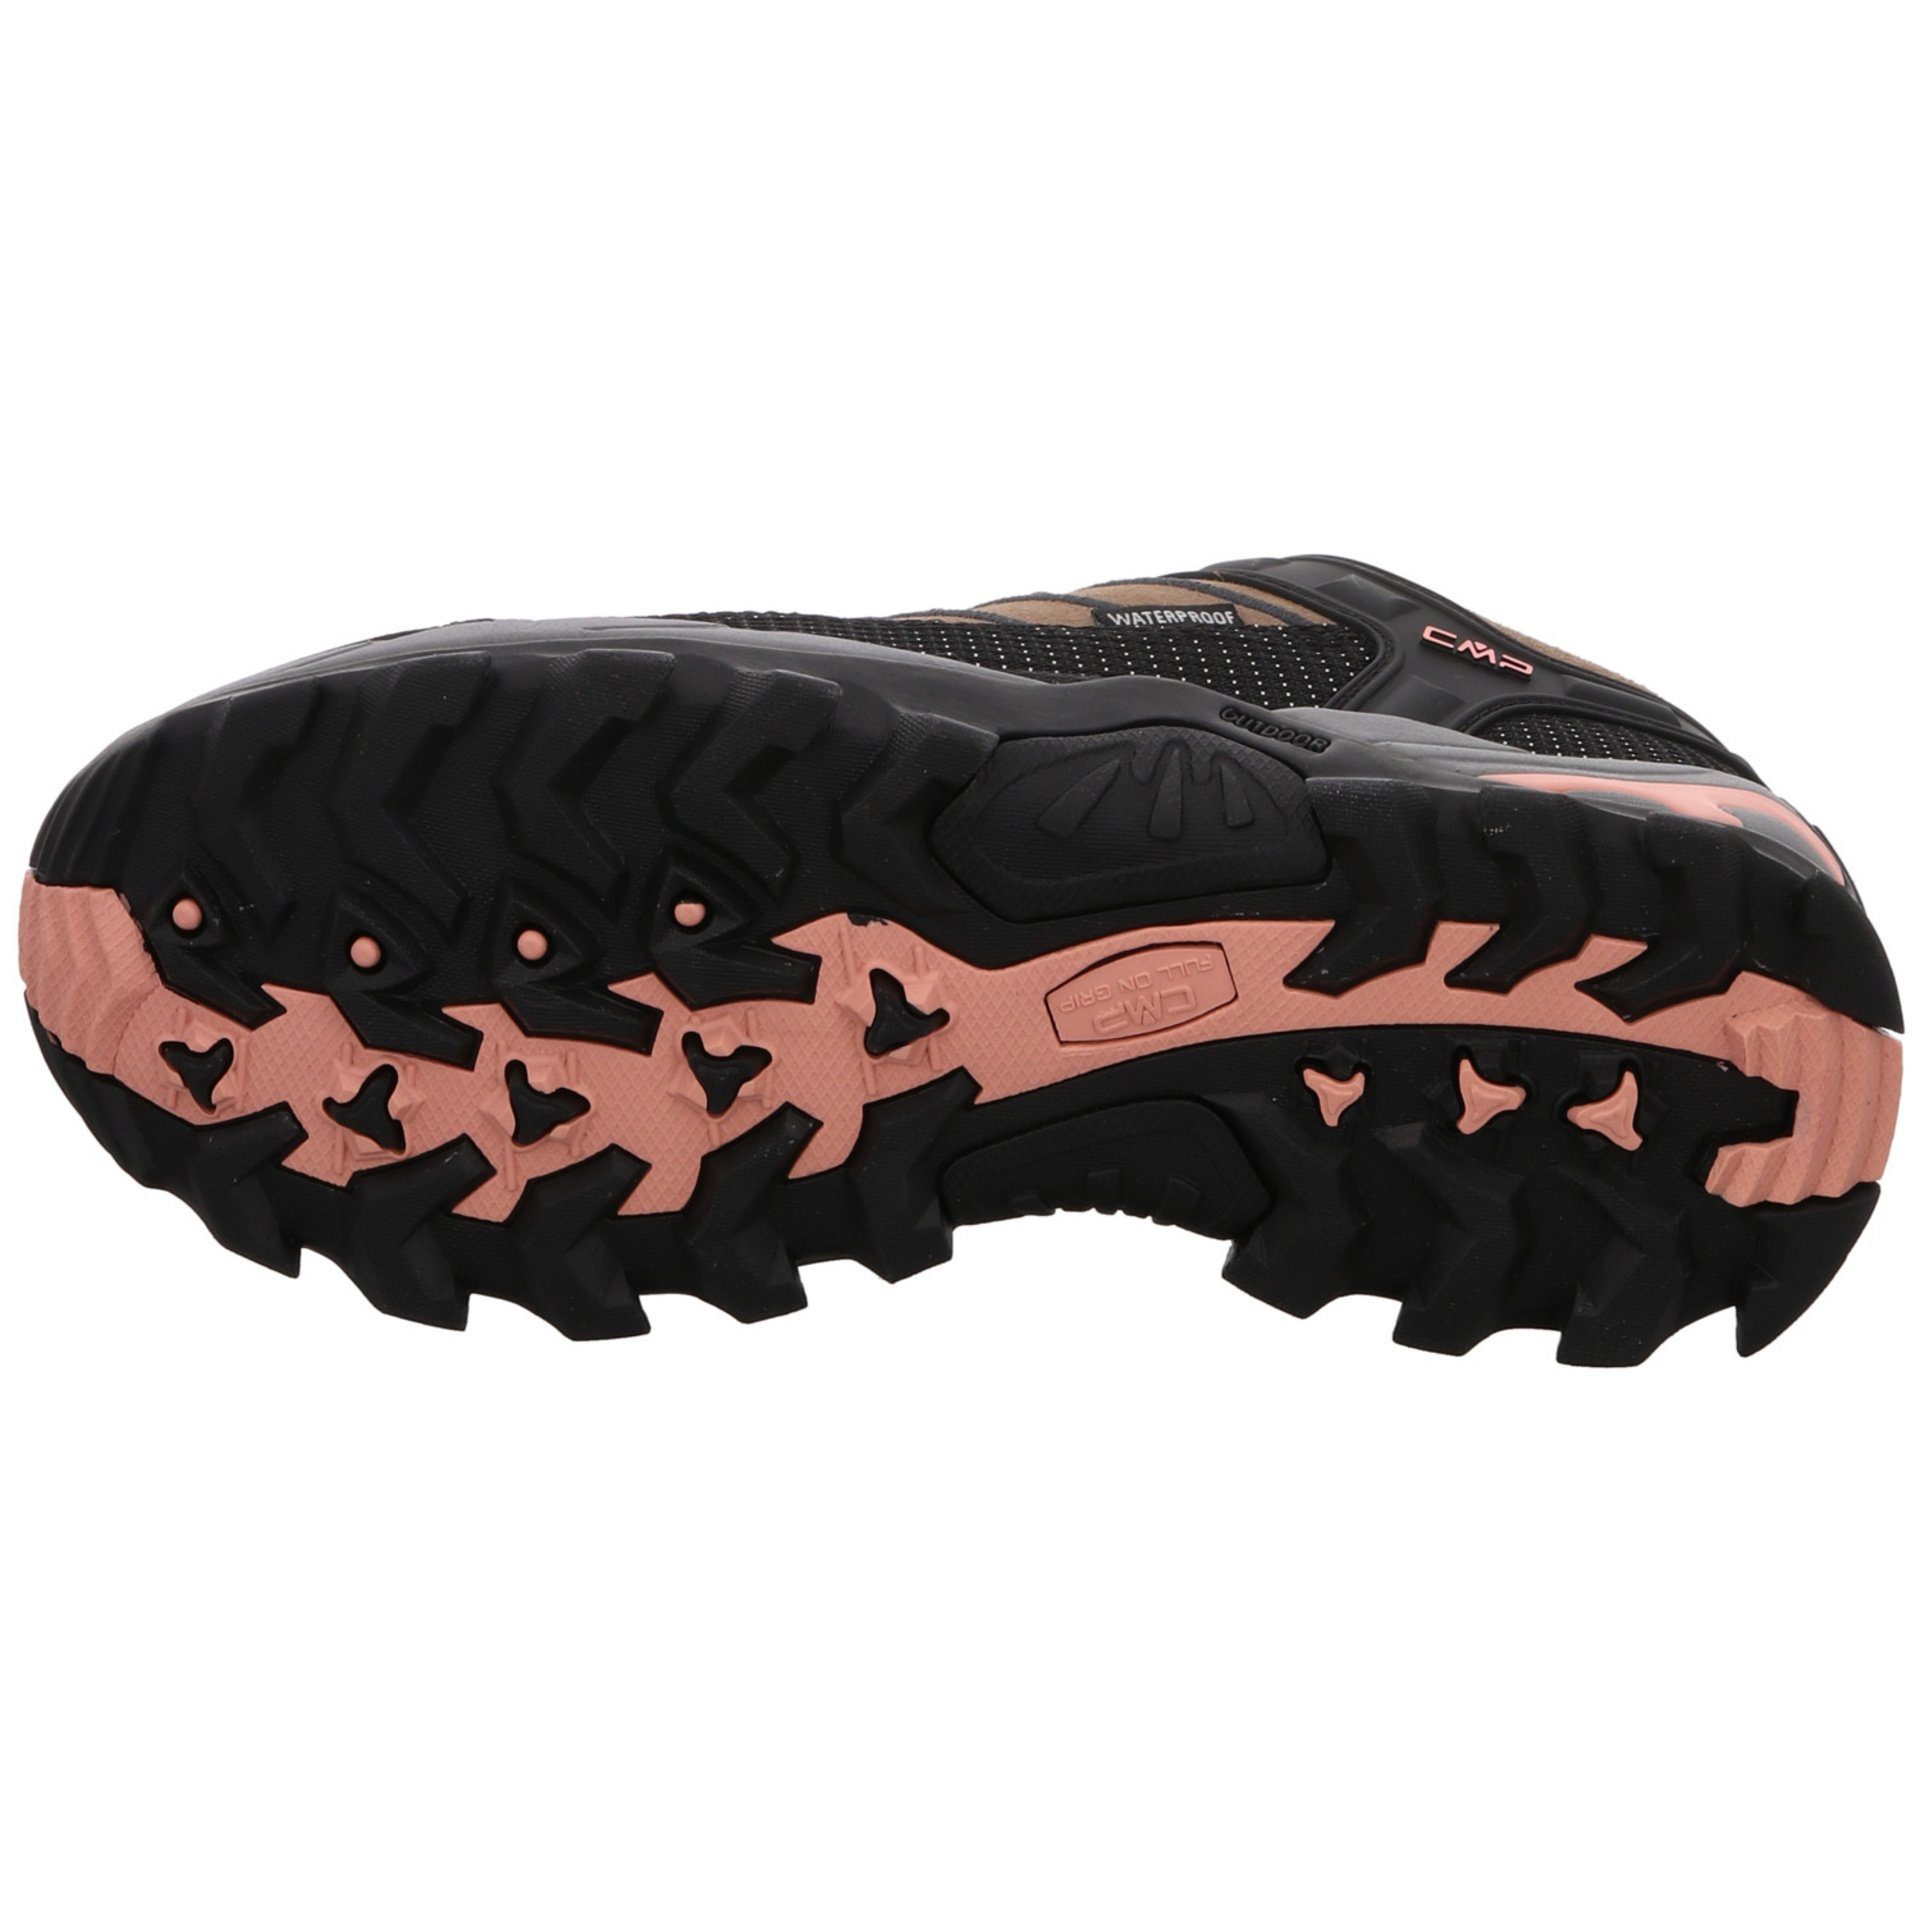 CMP Damen Schuhe Outdoor Rigel Low Outdoorschuh Leder-/Textilkombination CENERE Outdoorschuh